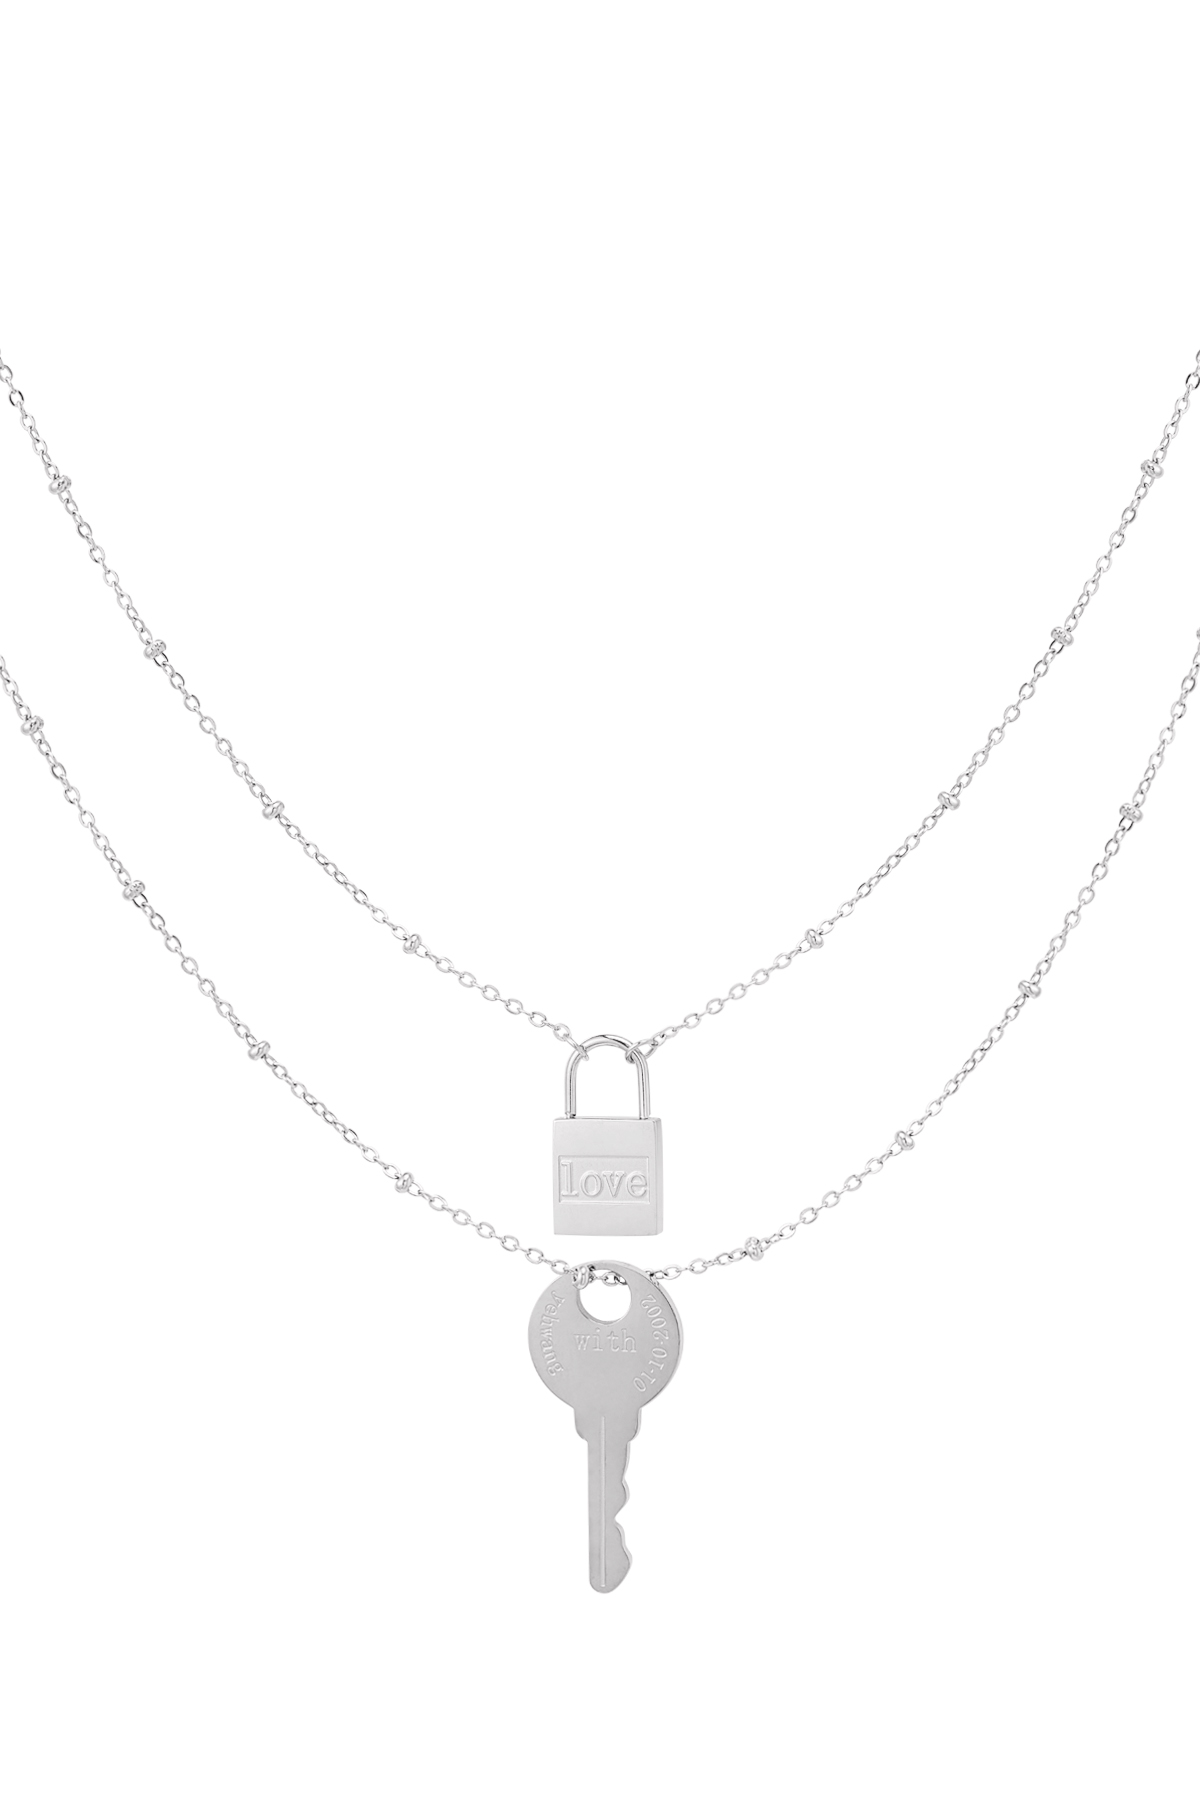 Çift zincirli anahtar ve kilit - gümüş Paslanmaz Çelik